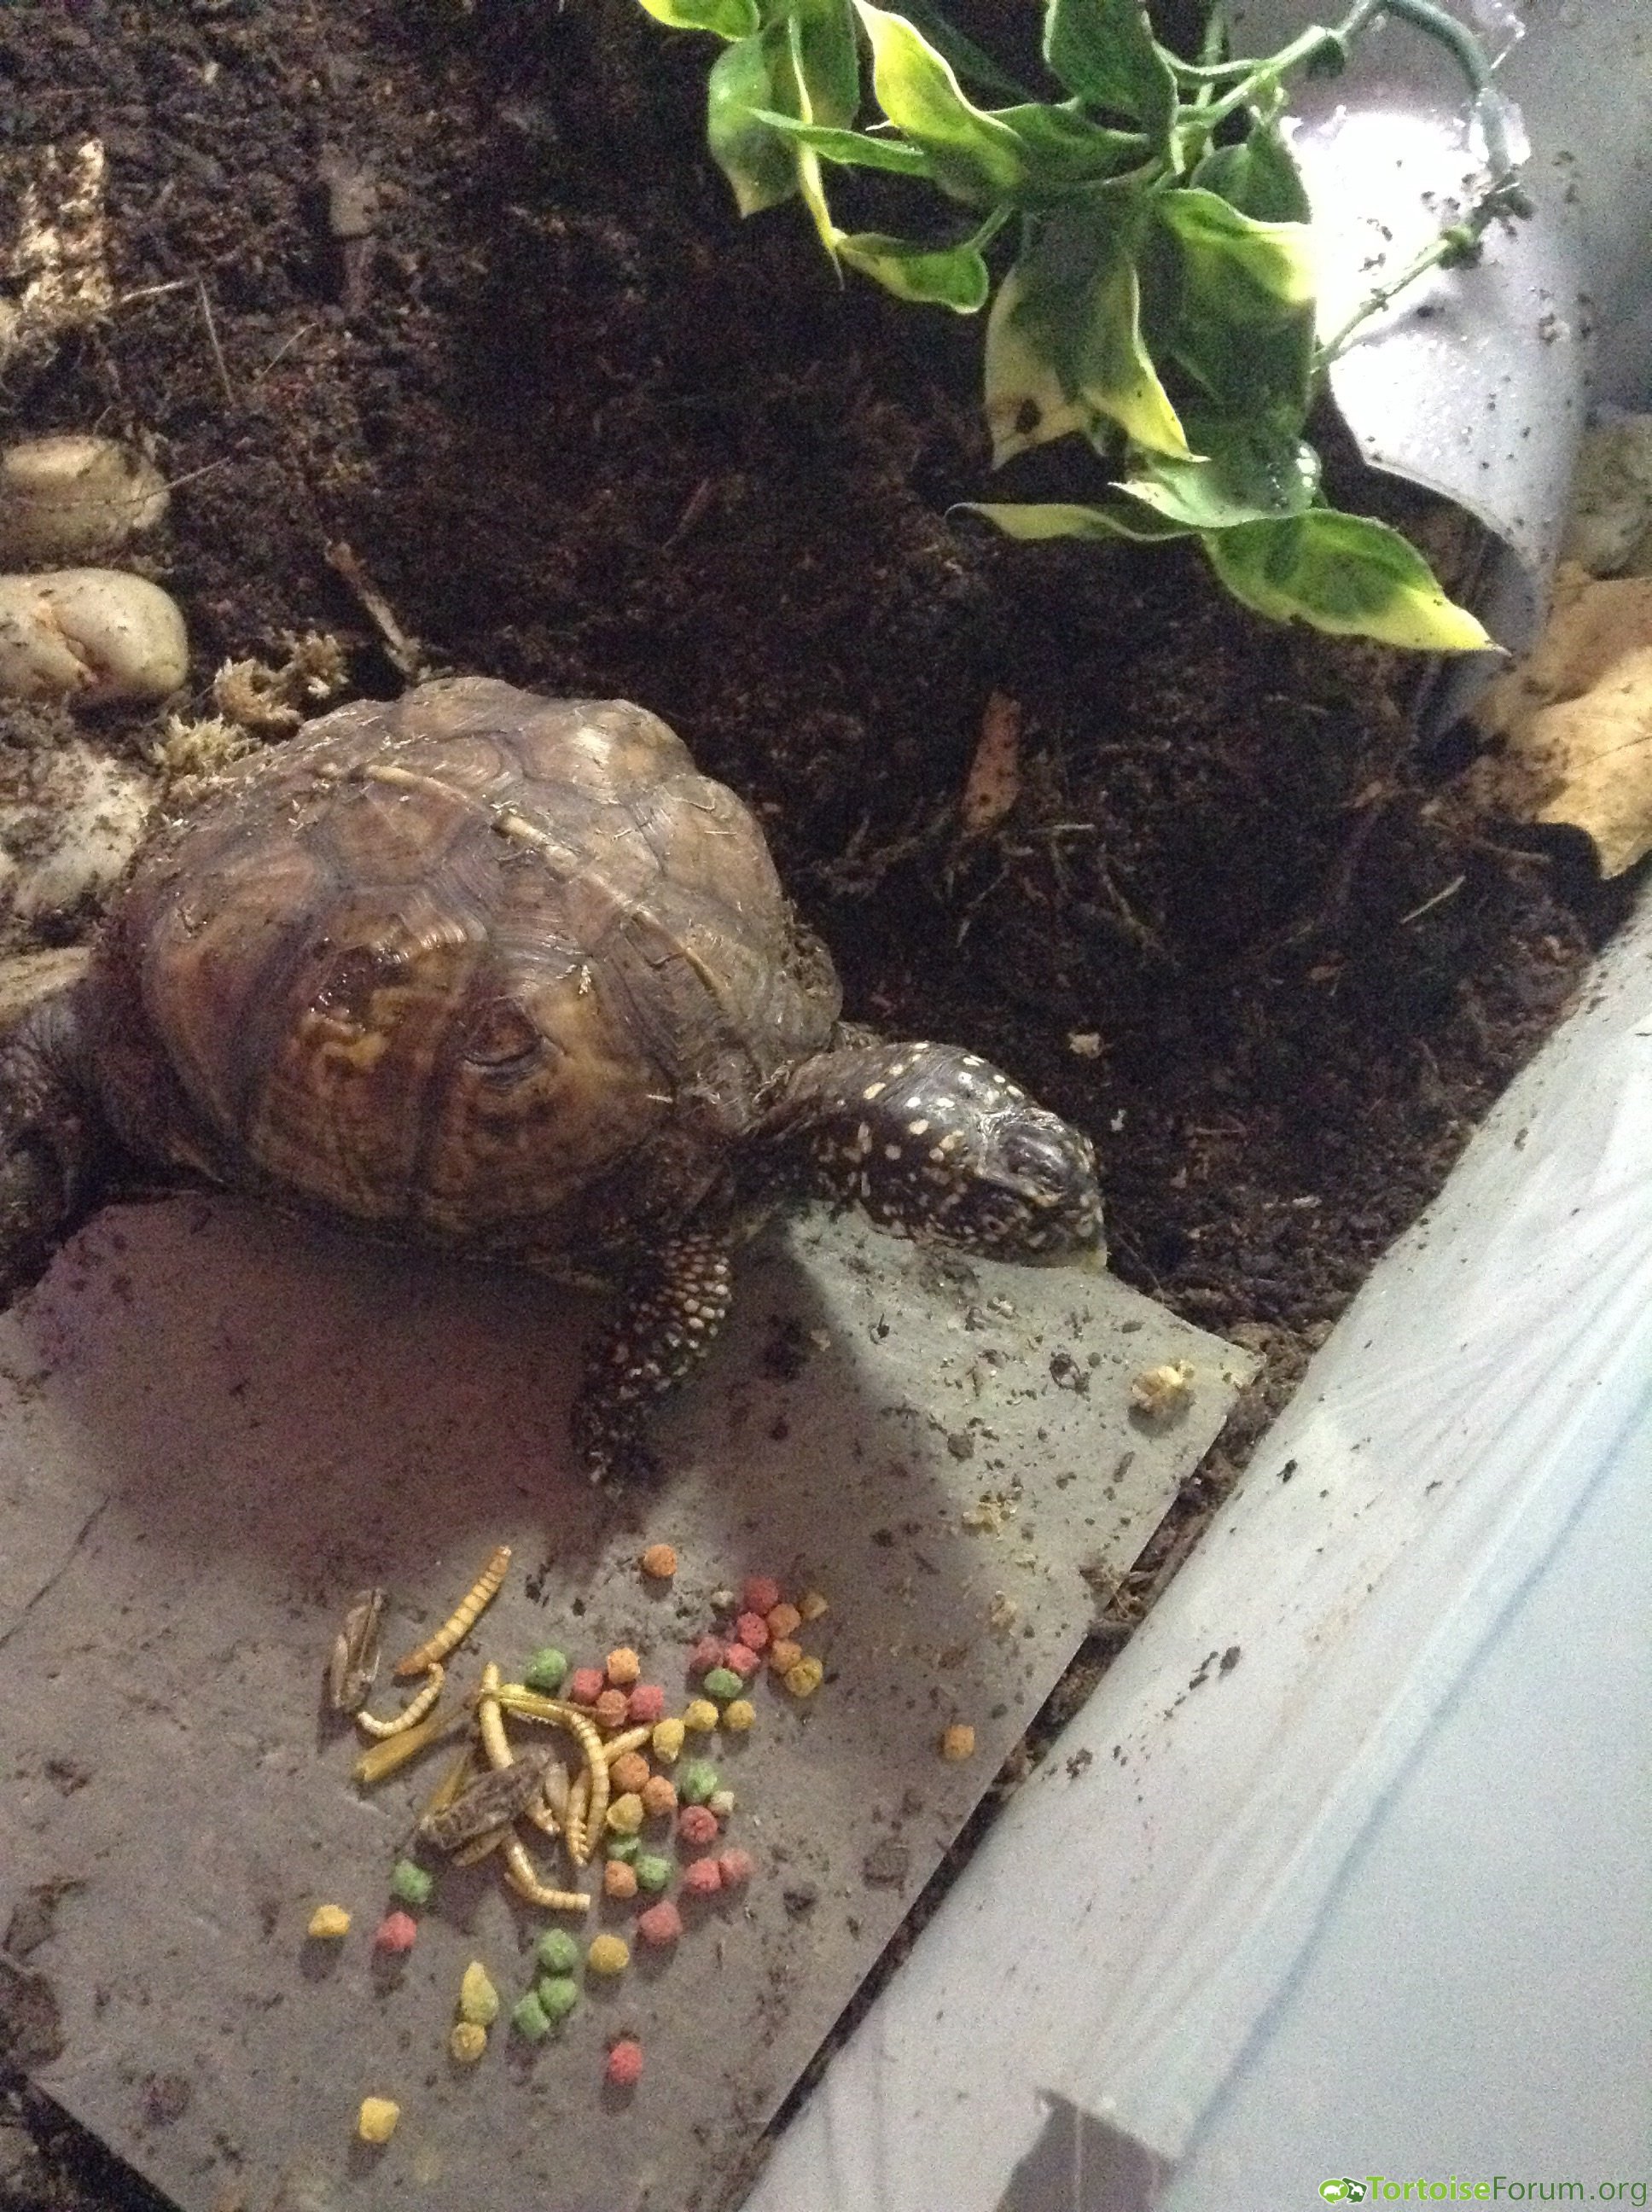 Breakfast (eastern box turtle)